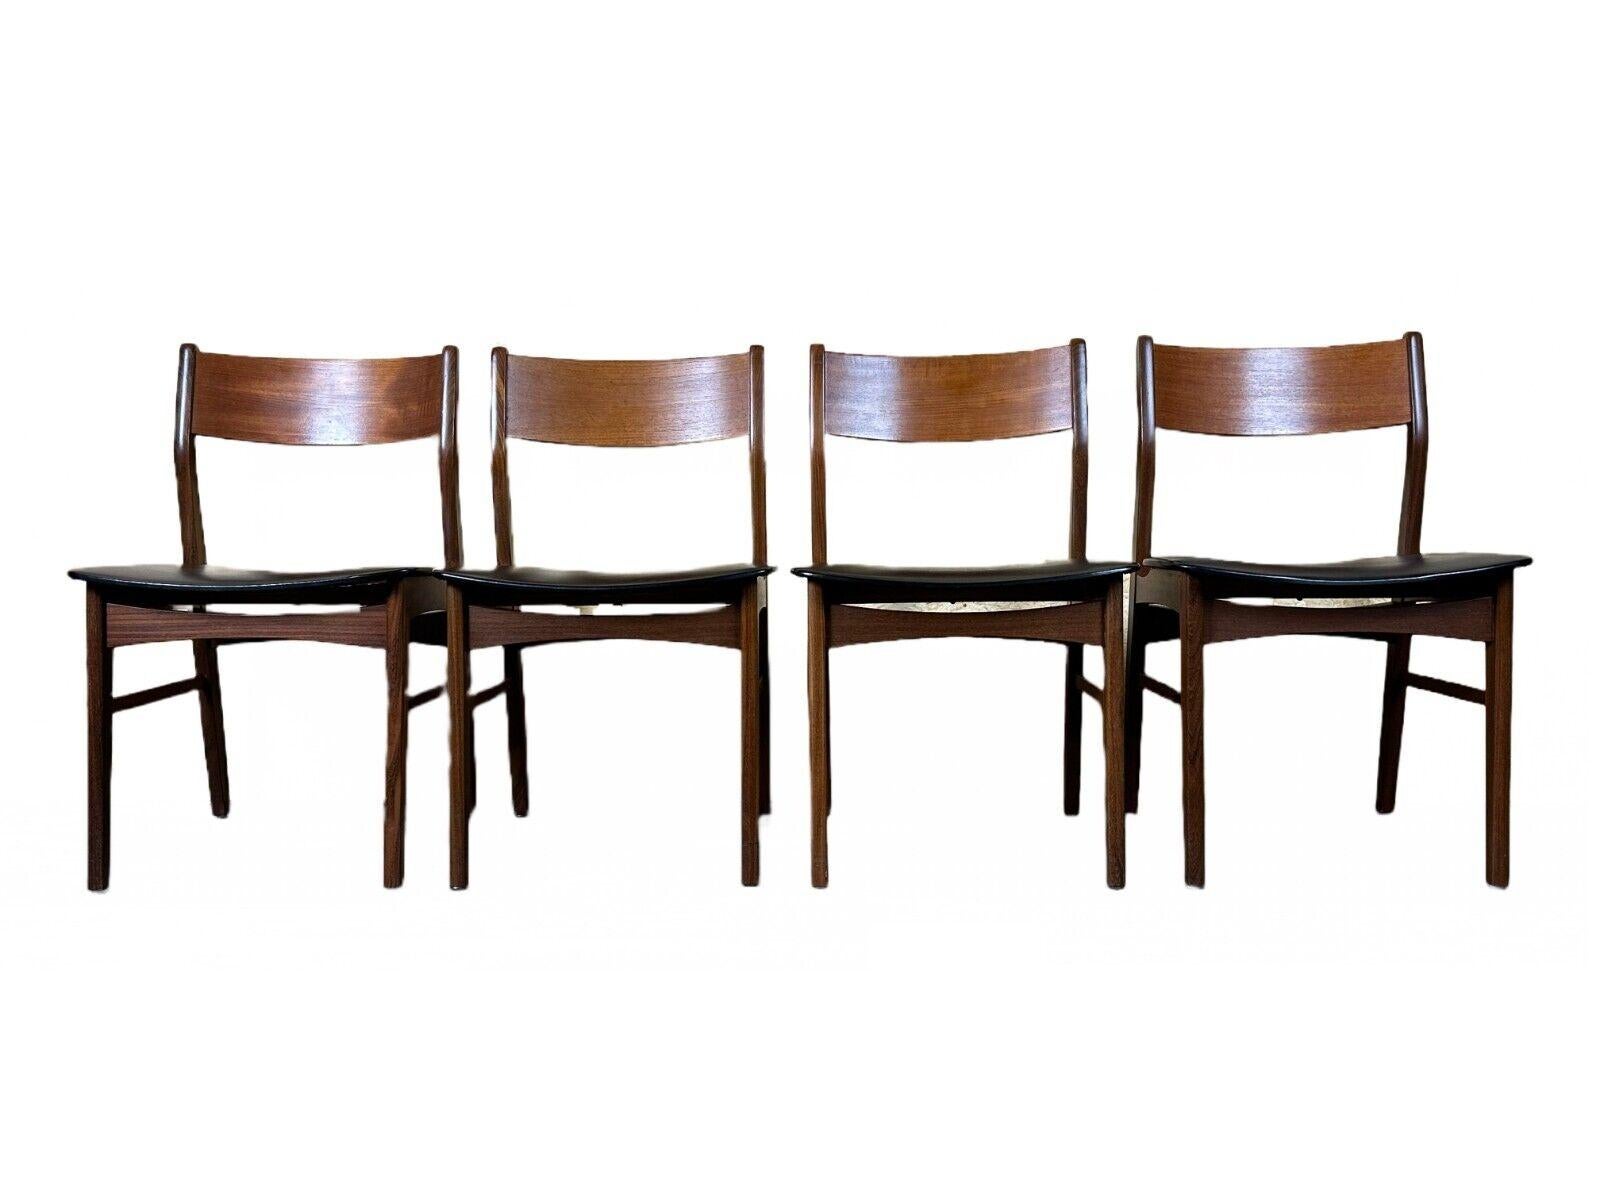 4x 60s 70s Teak Chair Dining Chair Danish Modern Design Denmark

Objet : 4x chaise

Fabricant :

Condit : bon

Âge : environ 1960-1970

Dimensions :

Largeur = 49cm
Profondeur = 47cm
Hauteur = 79cm
Hauteur d'assise = 43,5 cm

MATERIAL : teck, simili